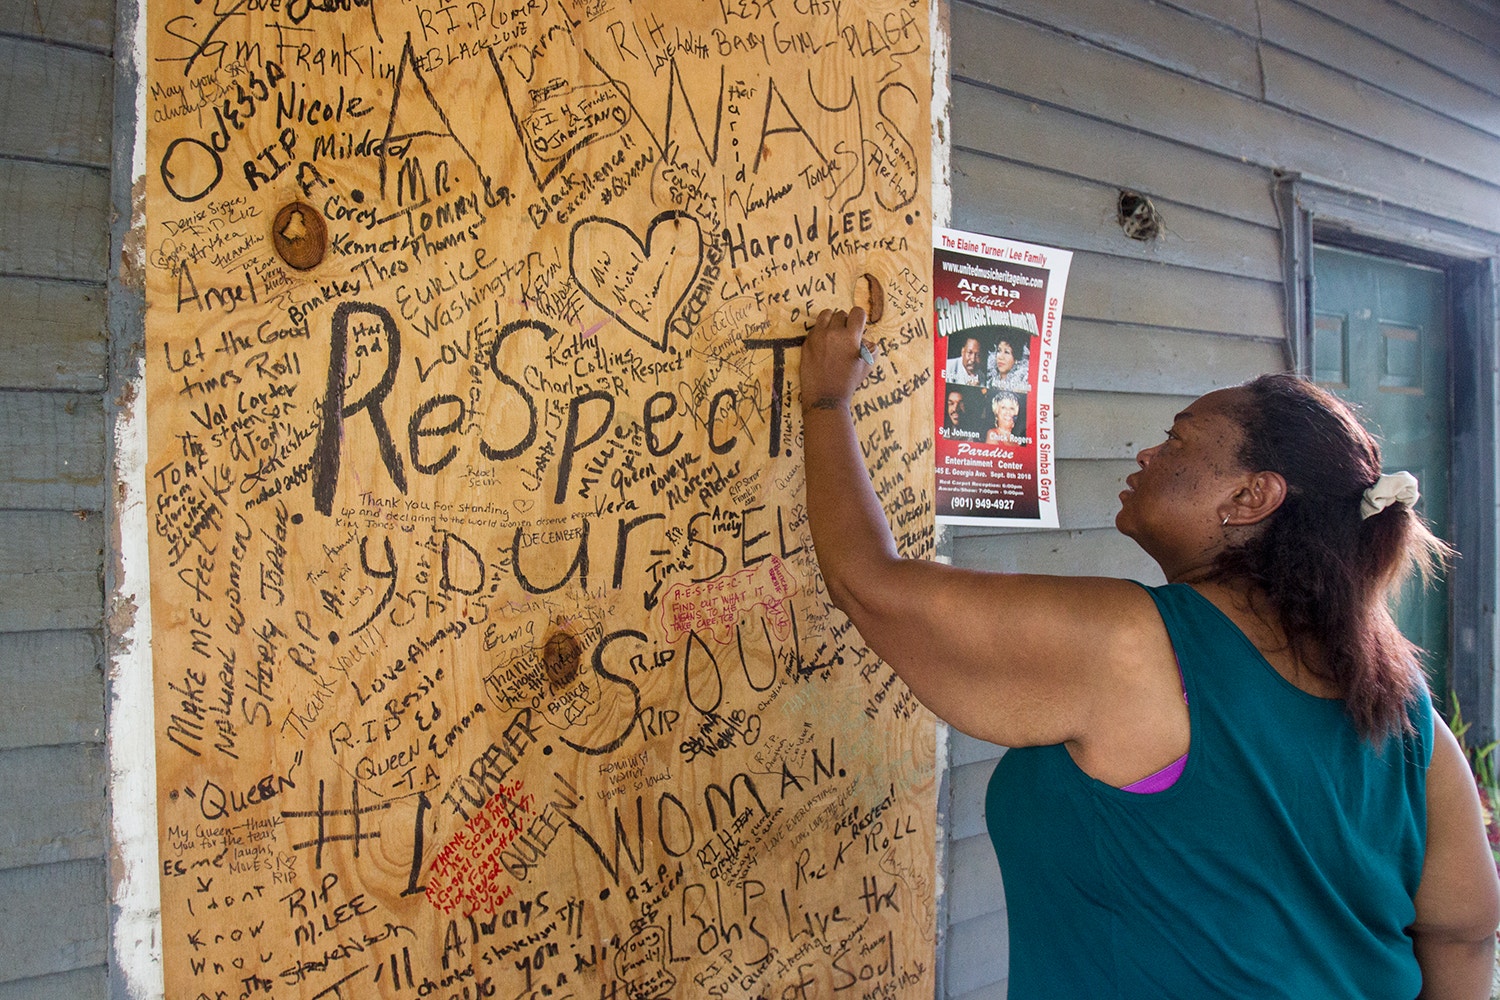  Pessoas deixam frases em homenagem a Aretha Franklin na casa onde nasceu em Memphis, Tennessee /Mike Brown - EPA 